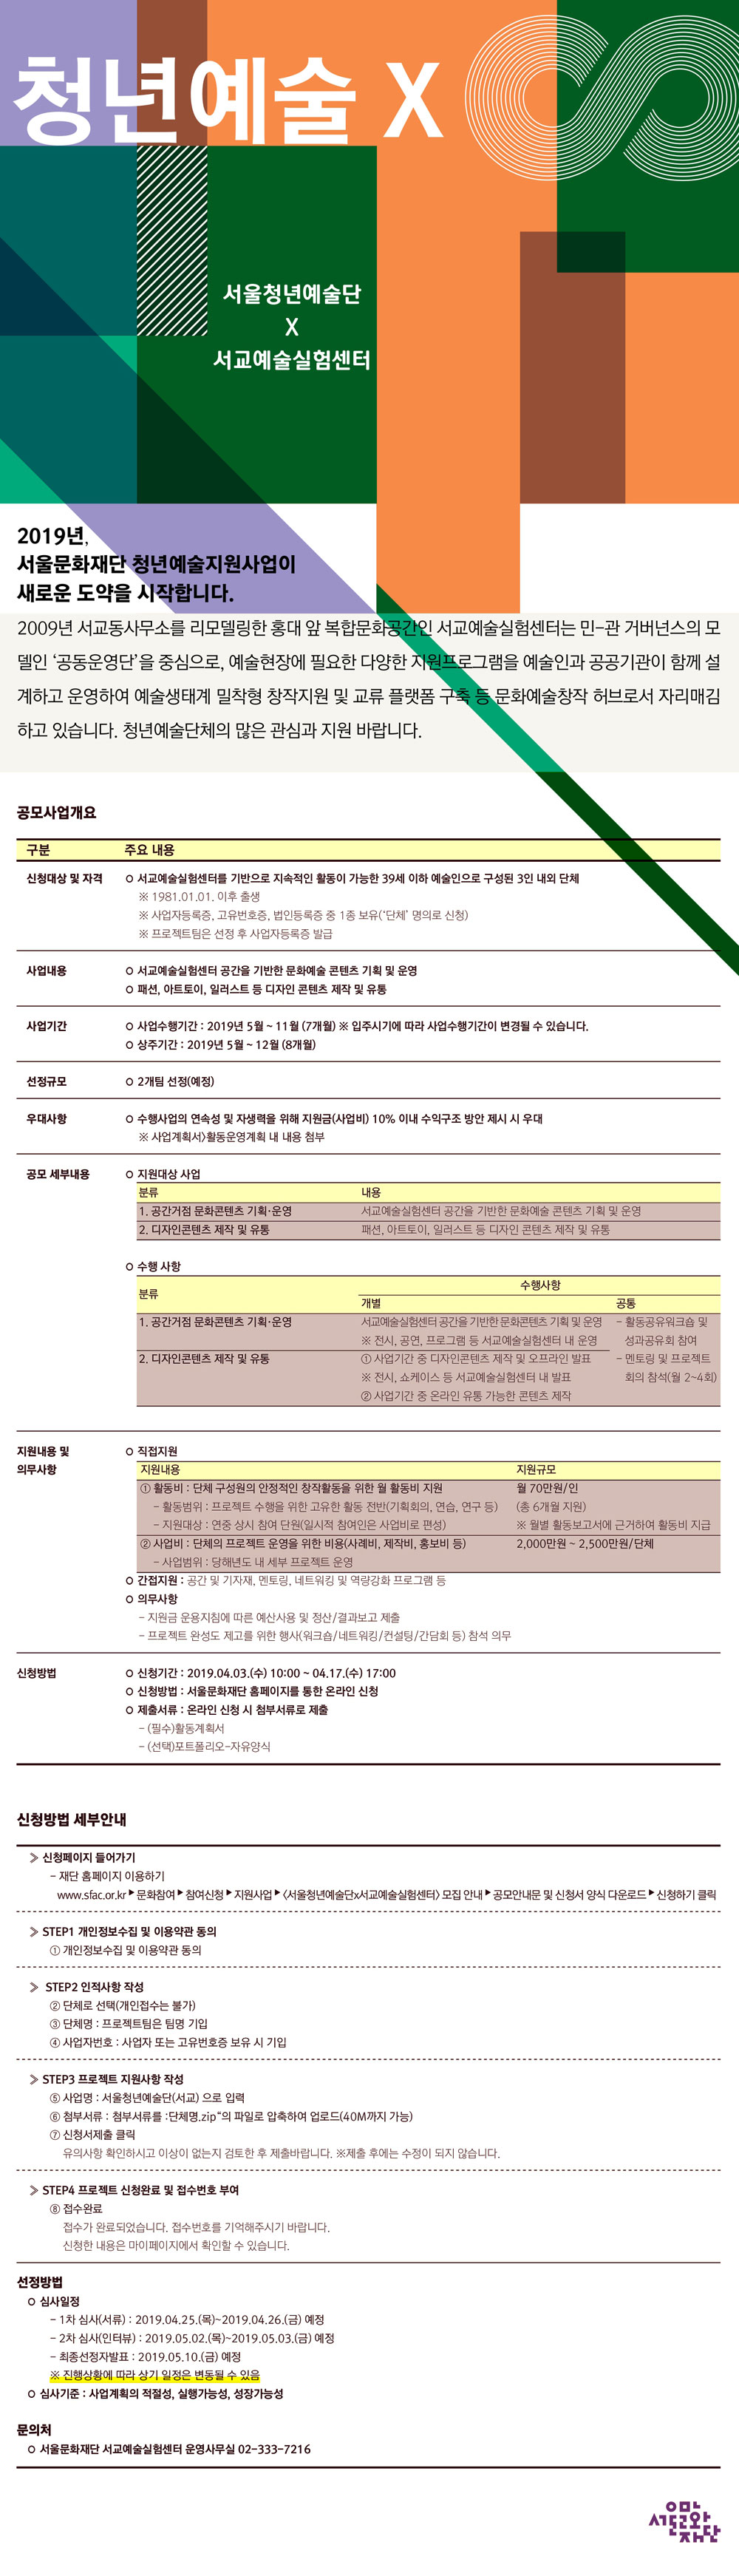 2019 서울청년예술단X서교예술실험센터 포스터 - 자세한 내용은 아래 글 참고